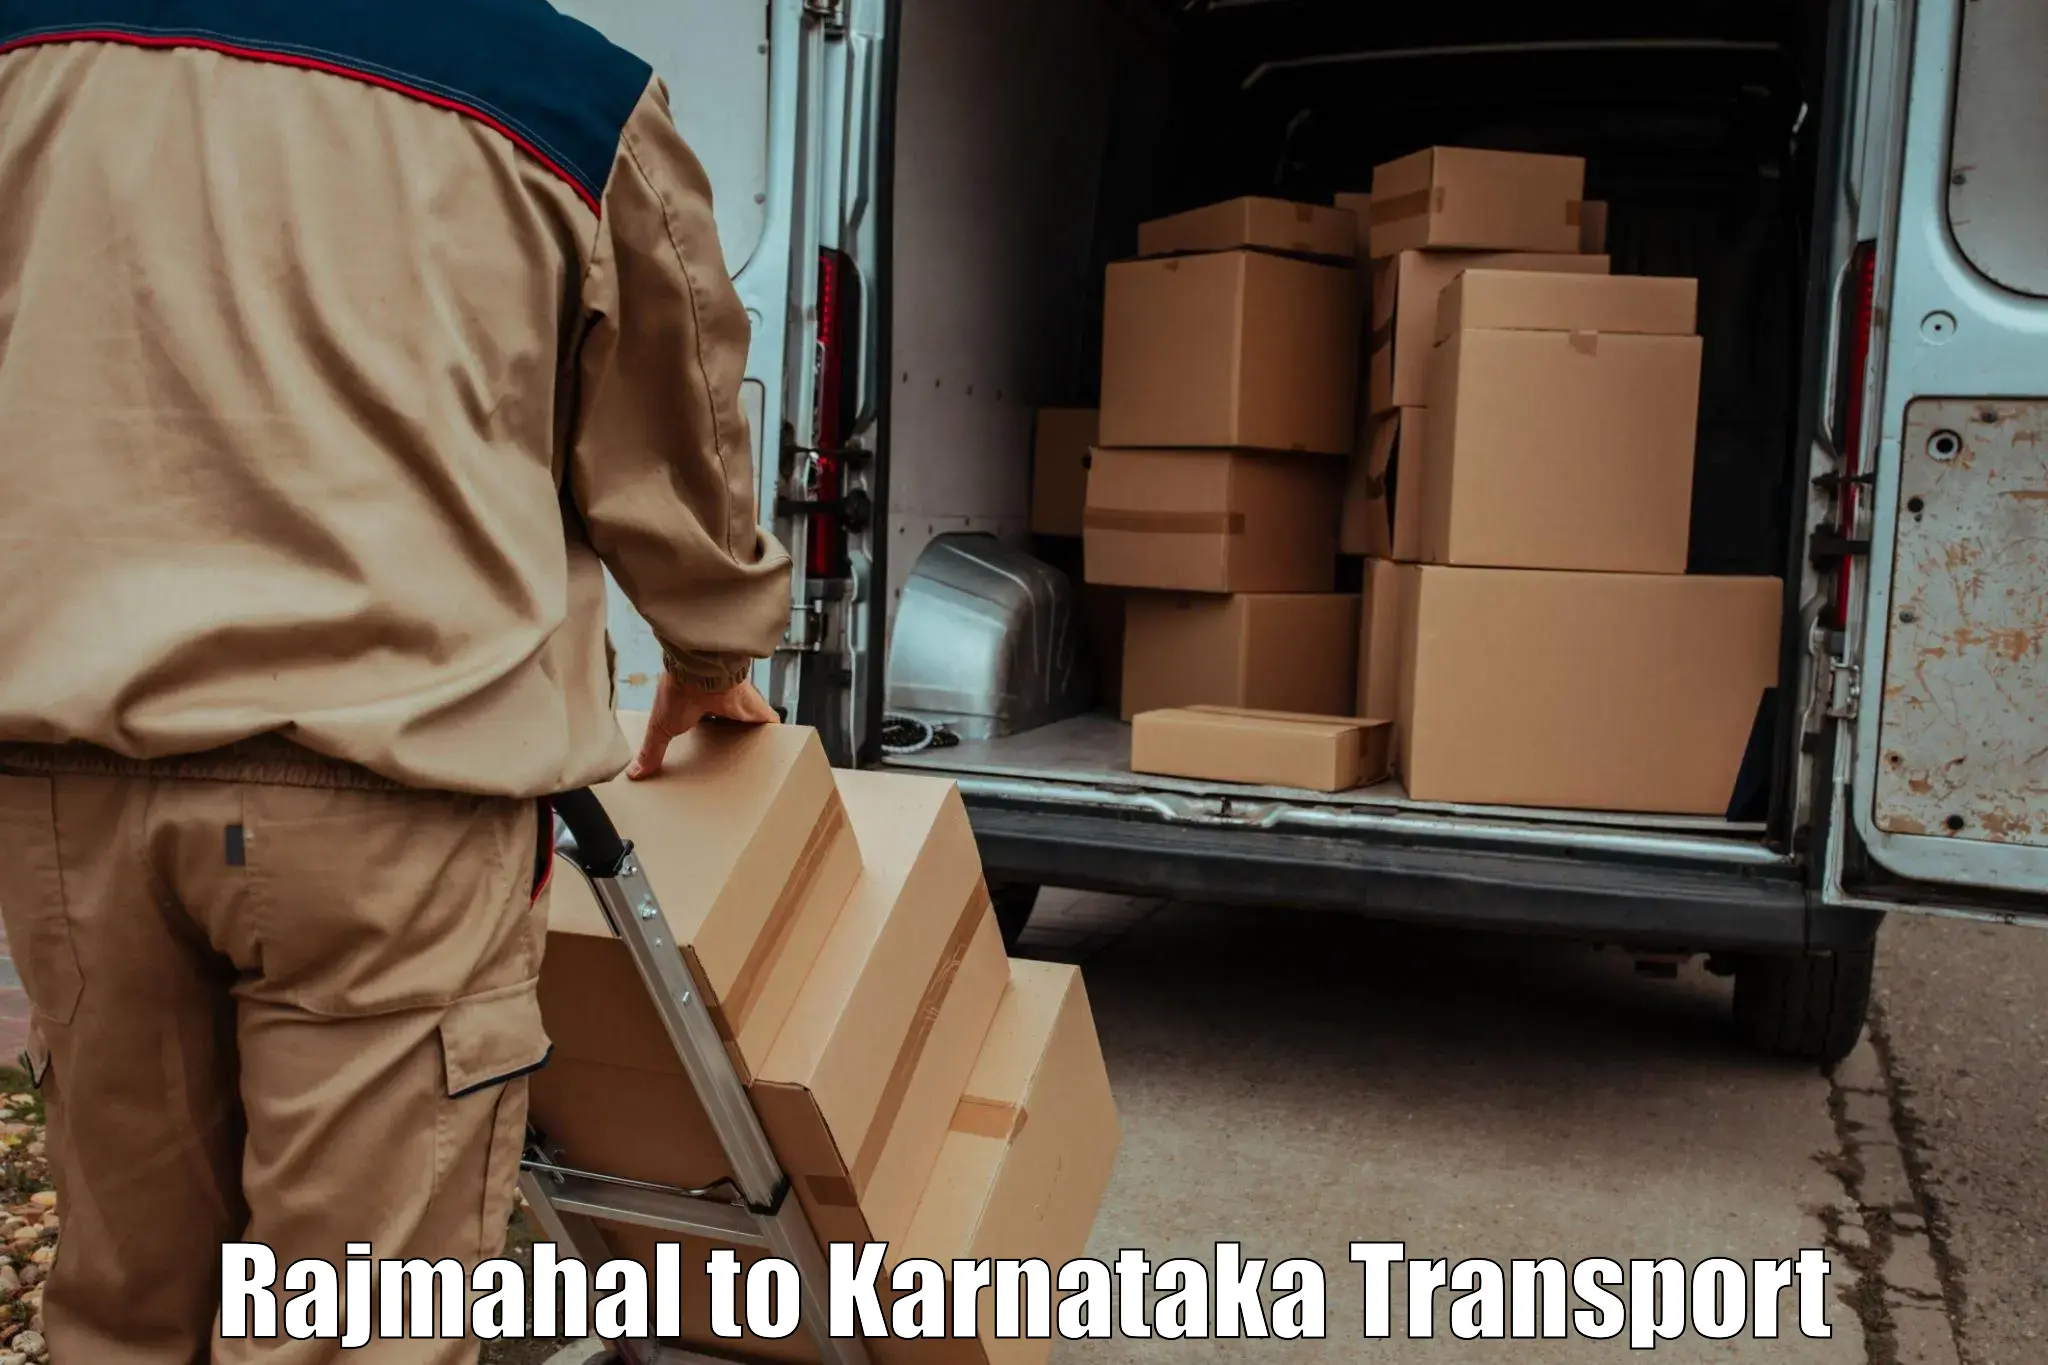 Furniture transport service Rajmahal to Channarayapatna